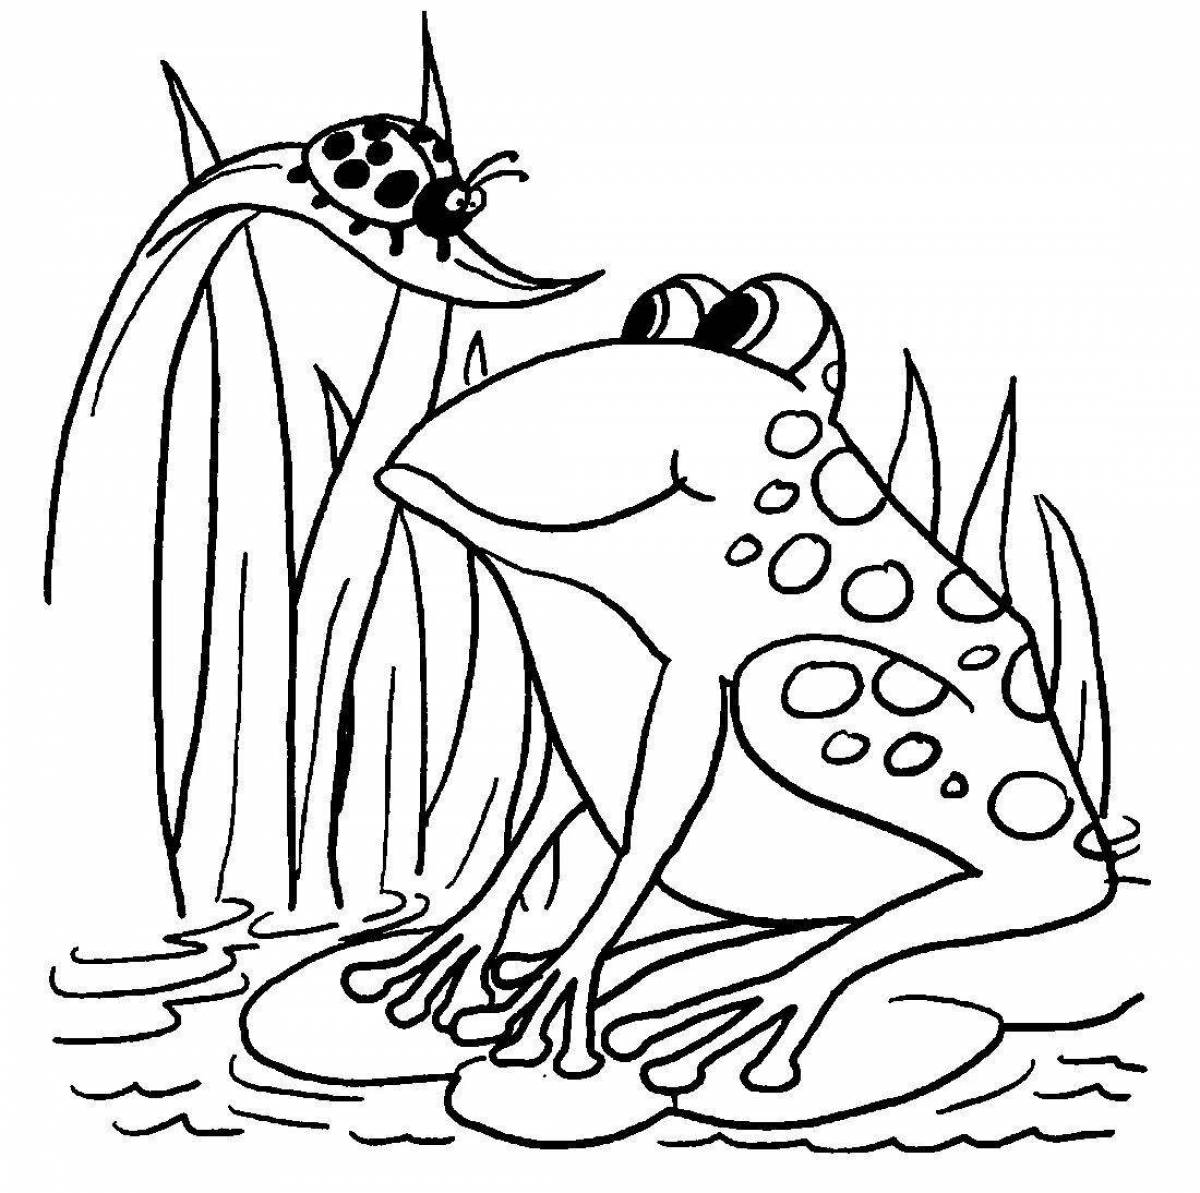 Анимированная страница раскраски мухоморной лягушки